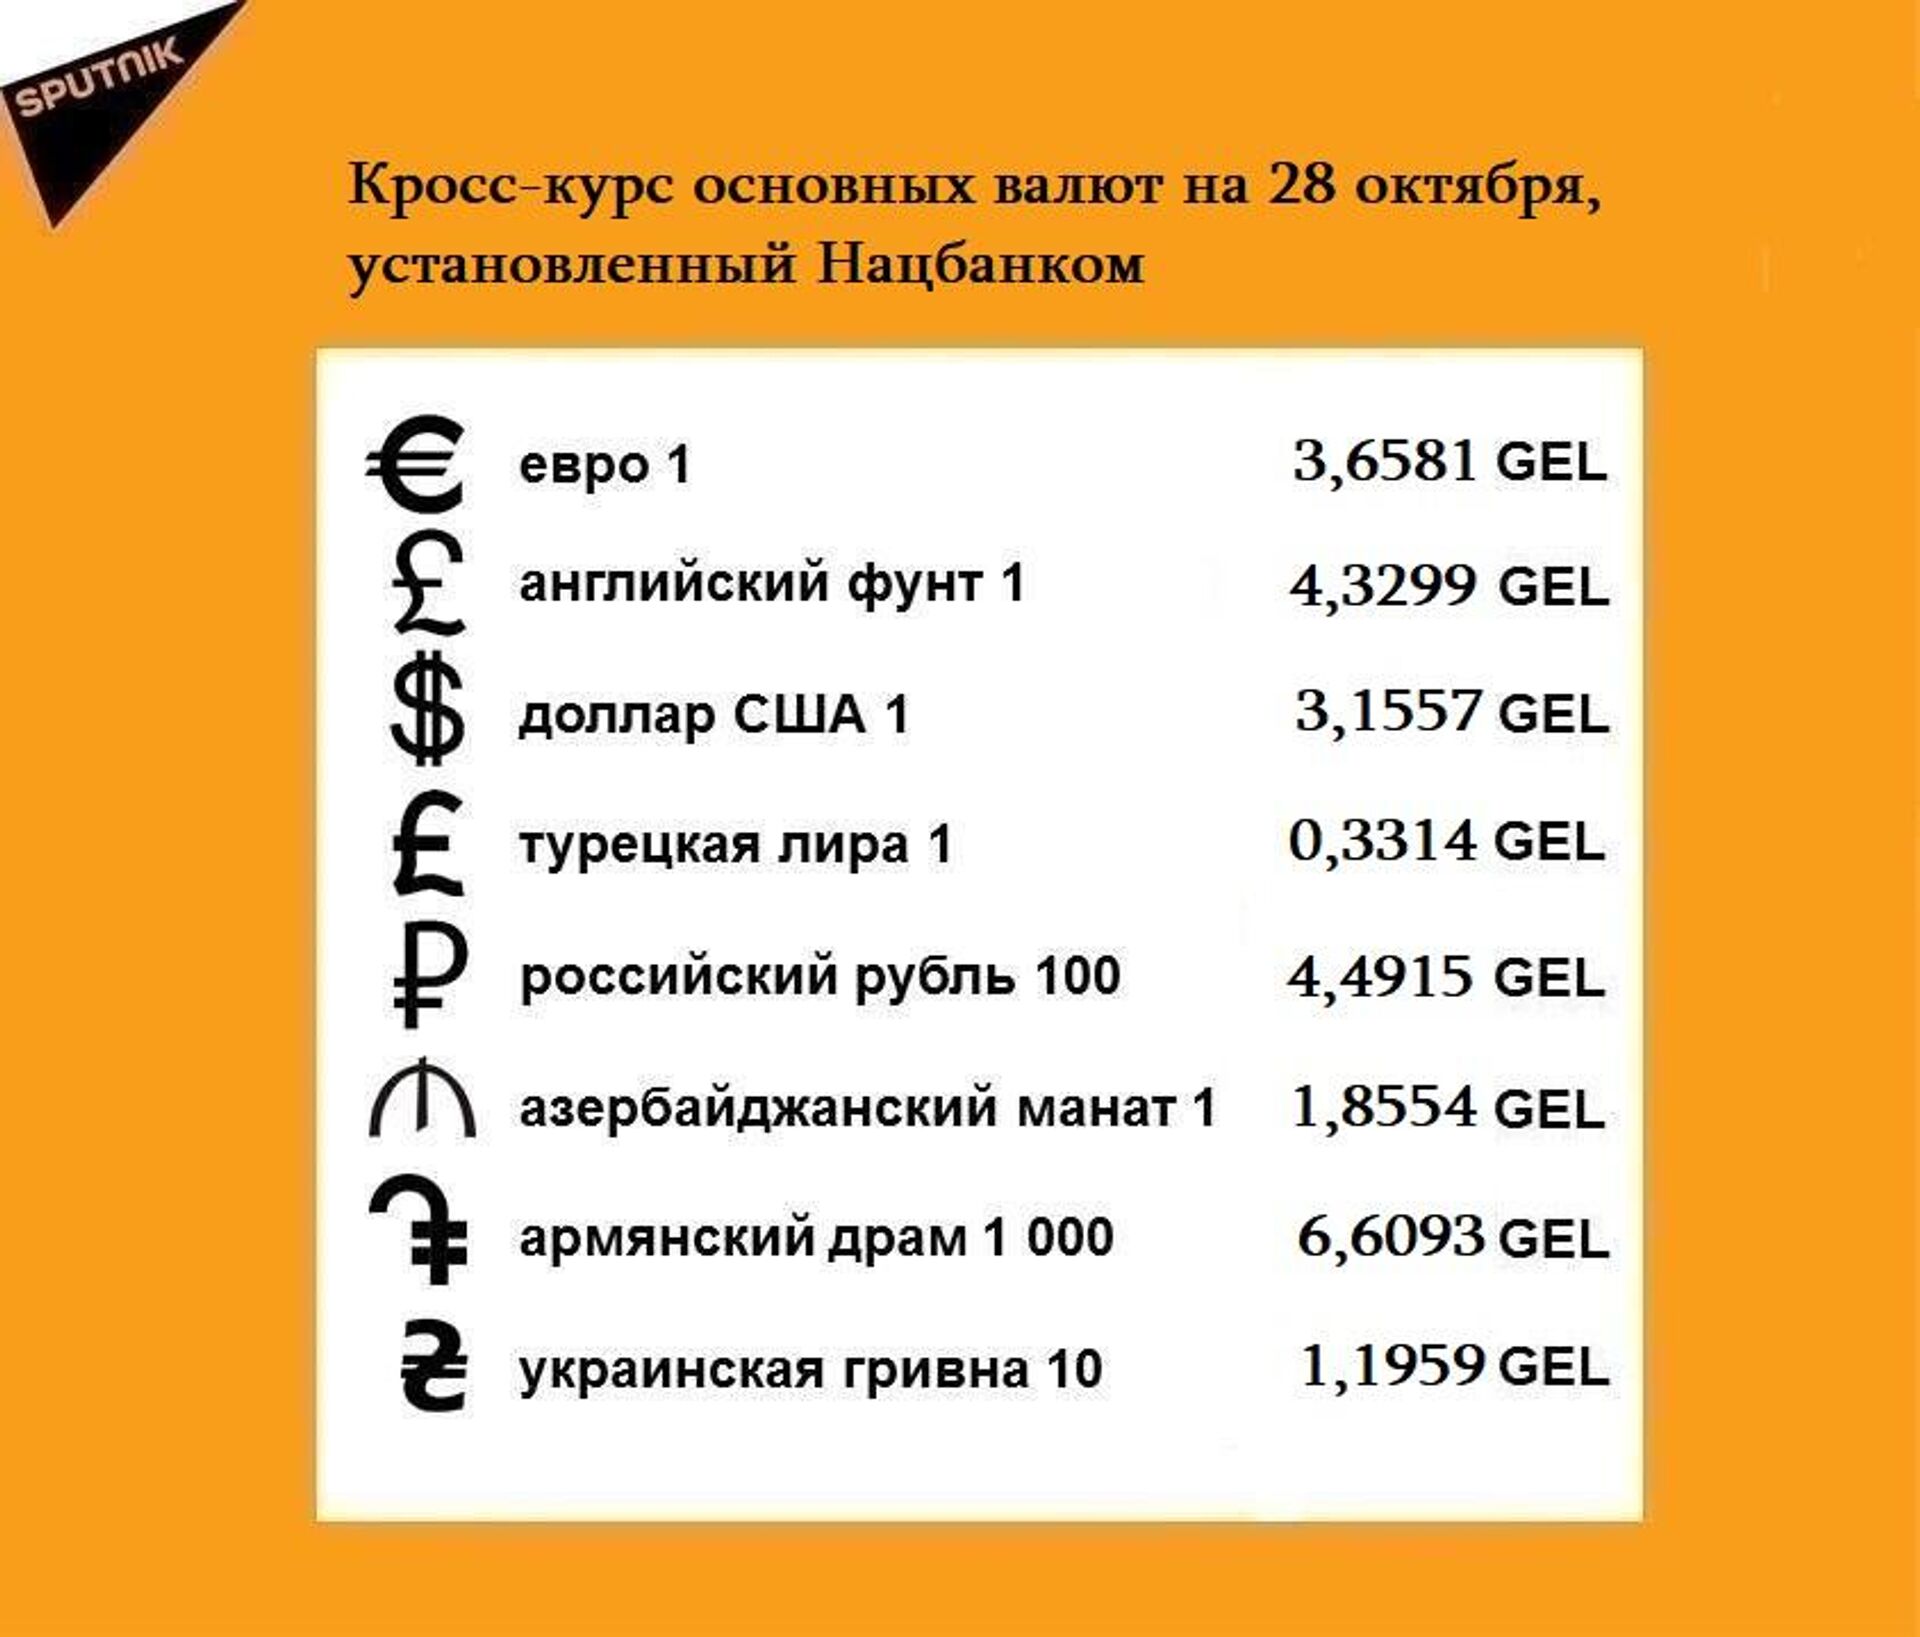 Кросс-курс основных валют на 28 октября - Sputnik Грузия, 1920, 27.10.2021